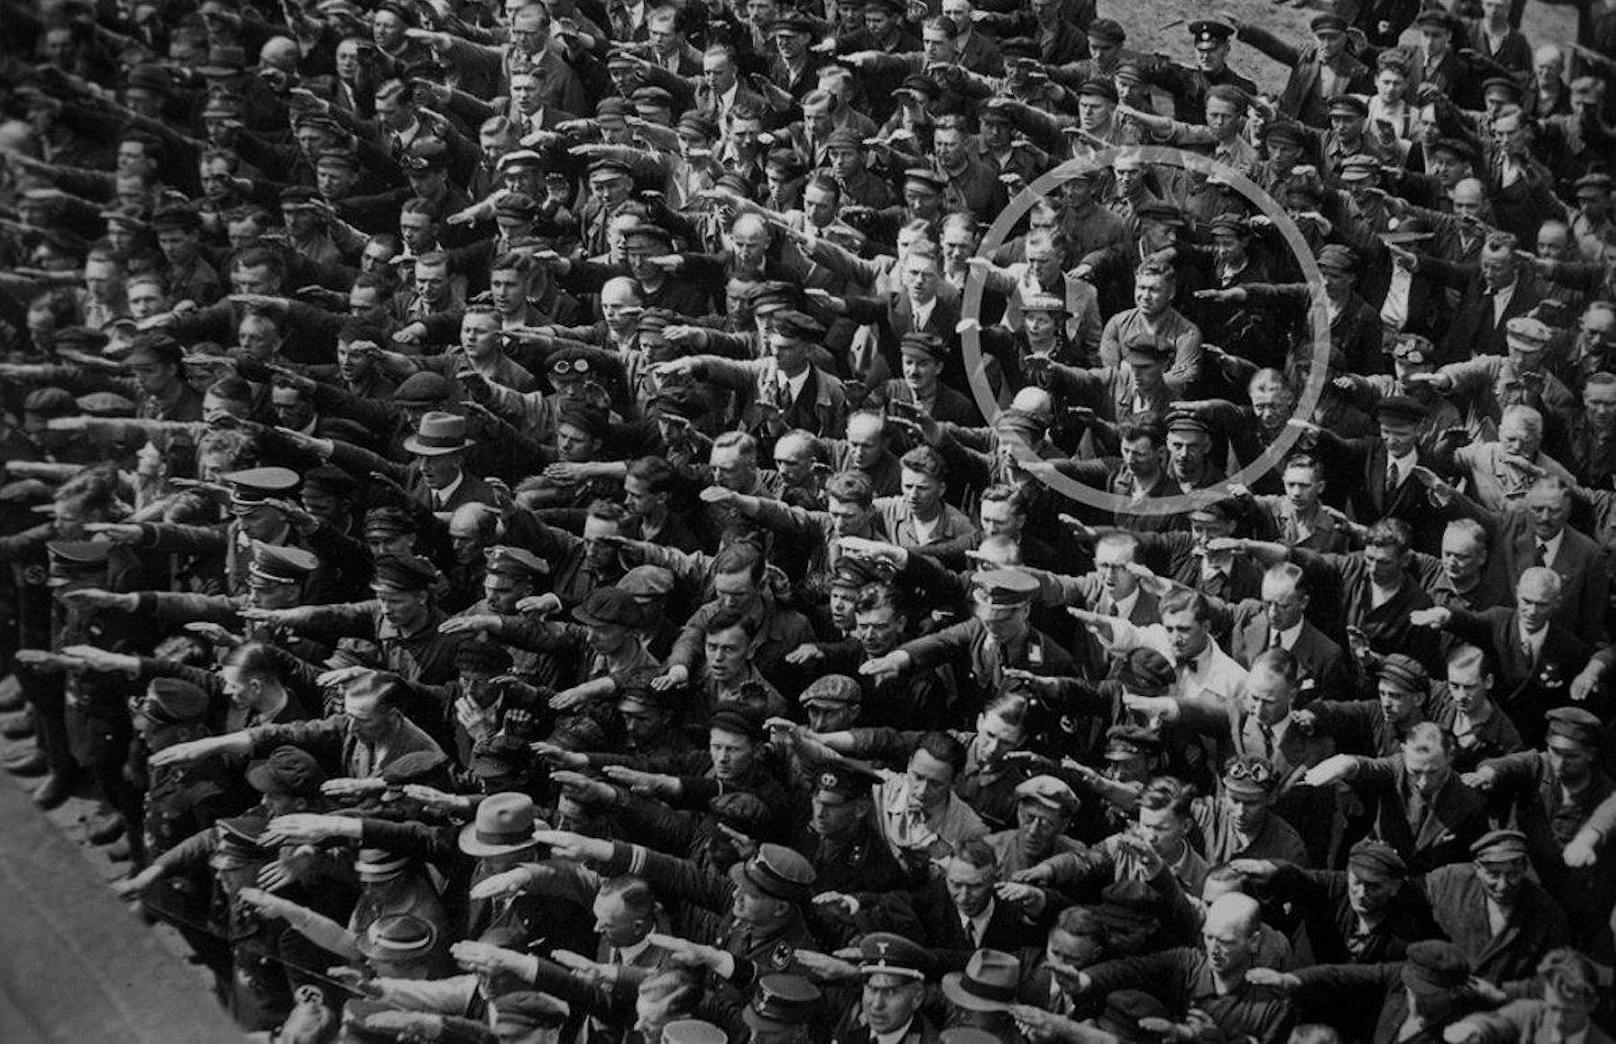 Dafür wird der Bursch nun von der Netzgemeinde gefeiert und das Jahrgangsfoto mit diesem historischen Bild verglichen, wo ein Mann (Kreis) als einziger den Hitlergruß verweigert. Vermutet wird, dass es sich hierbei um den deutschen Arbeiter und späteres NS-Opfer August Landmesser handelt.